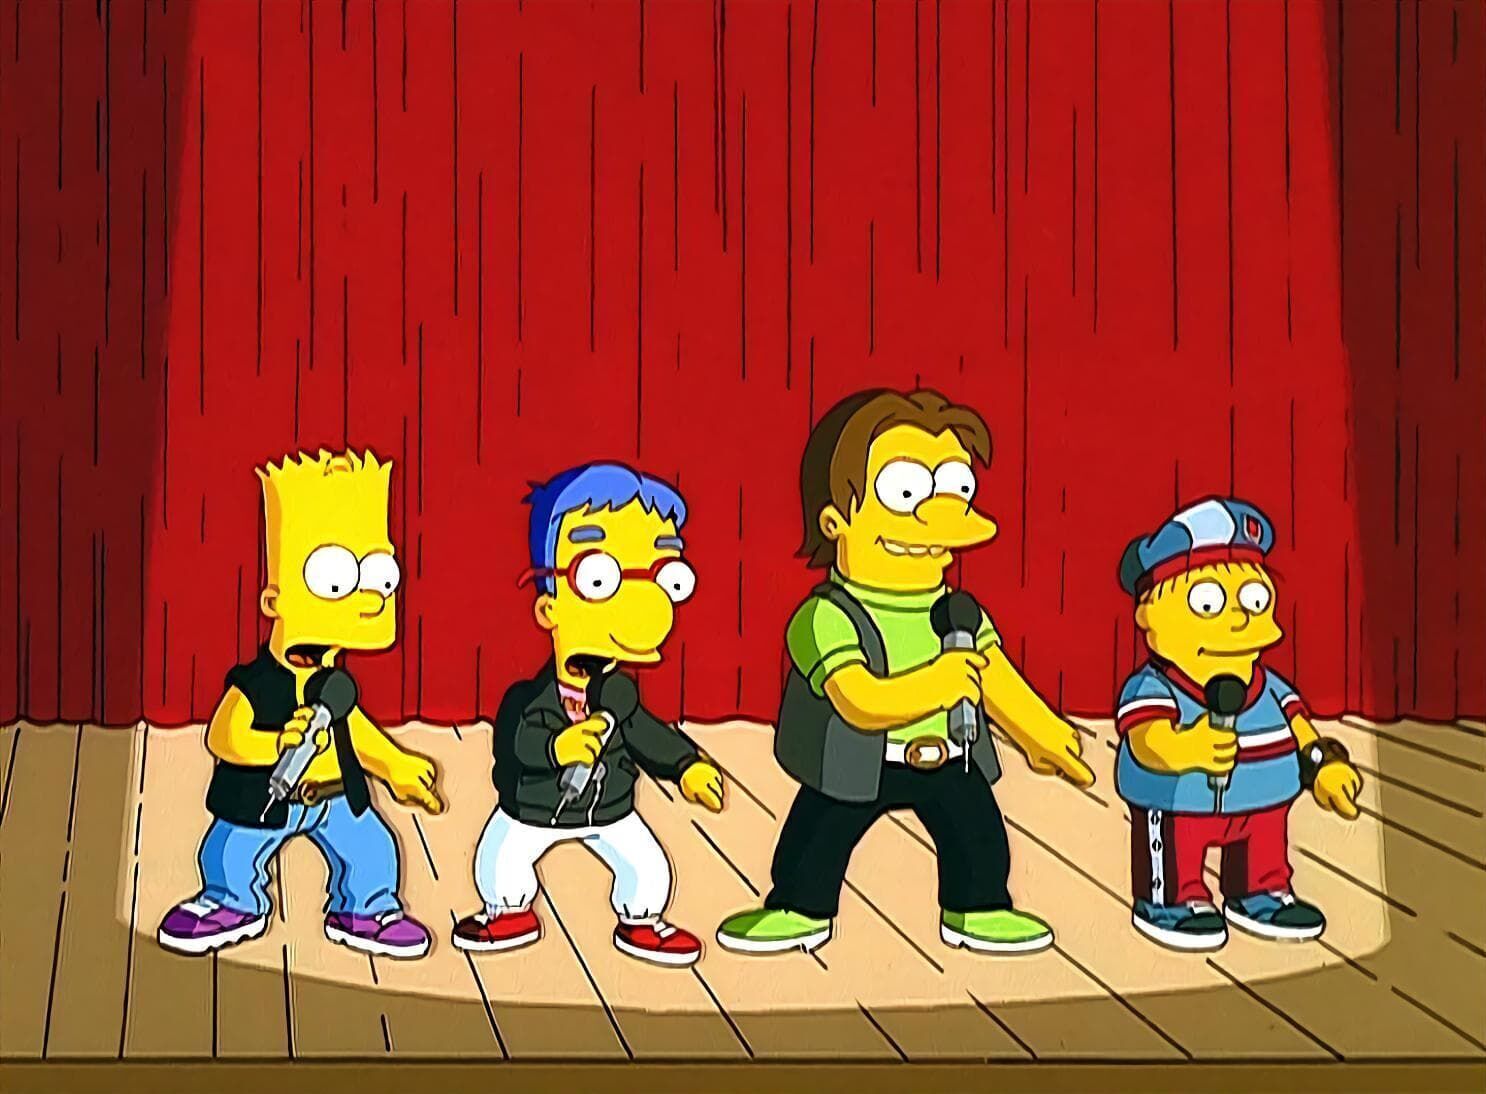 Les Simpson - Bart et son boys band